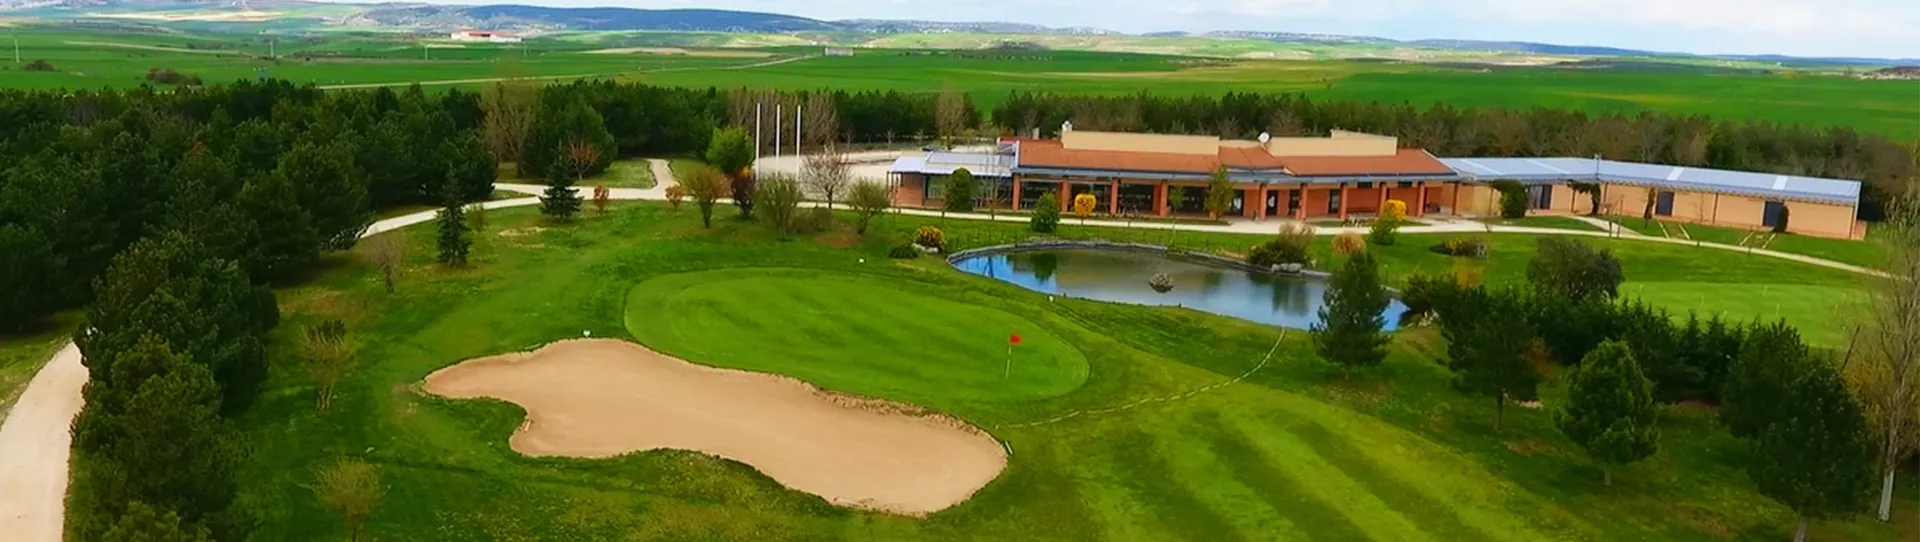 Spain golf courses - Riocerezo Golf Course - Photo 3